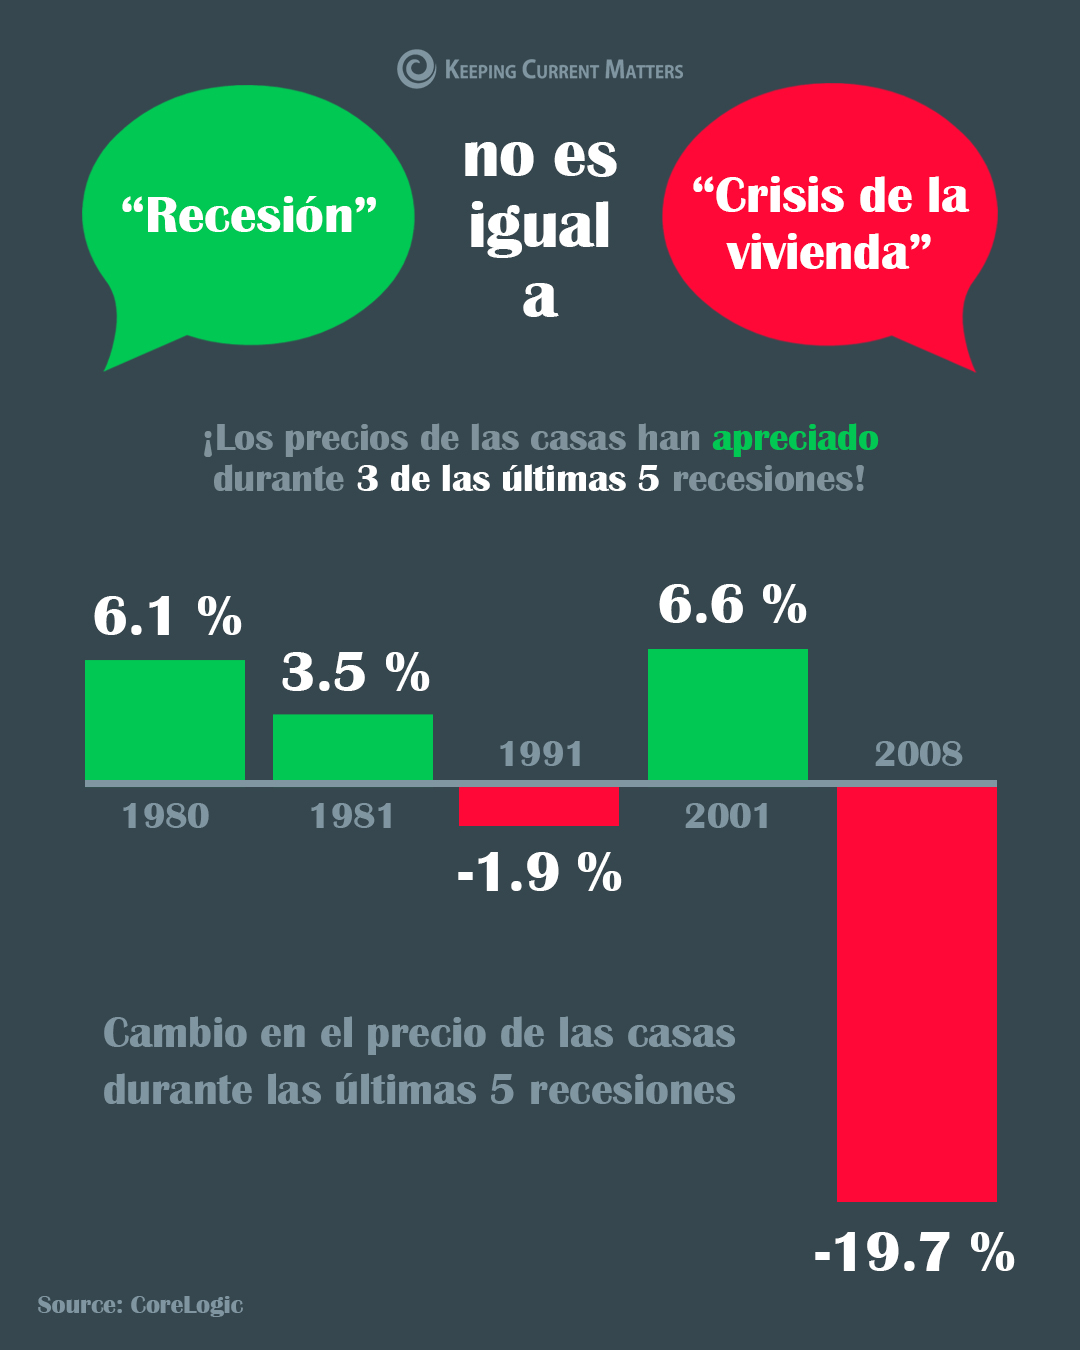 Recesión no es igual a crisis de la vivienda [Infografía] | Keeping Current Matters